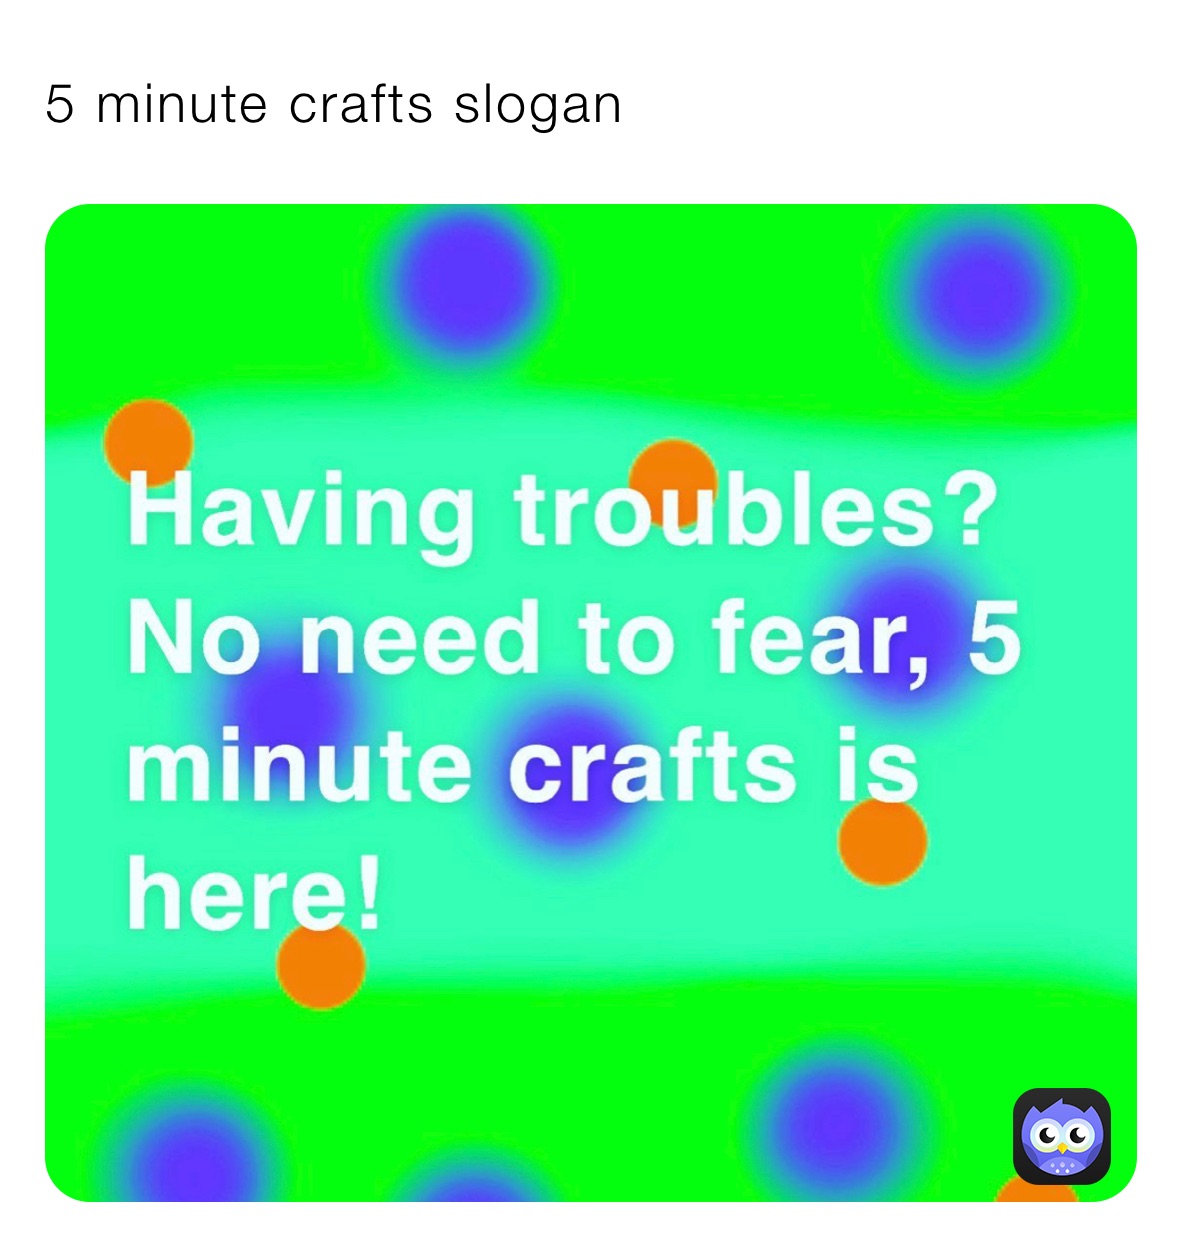 5 minute crafts slogan 